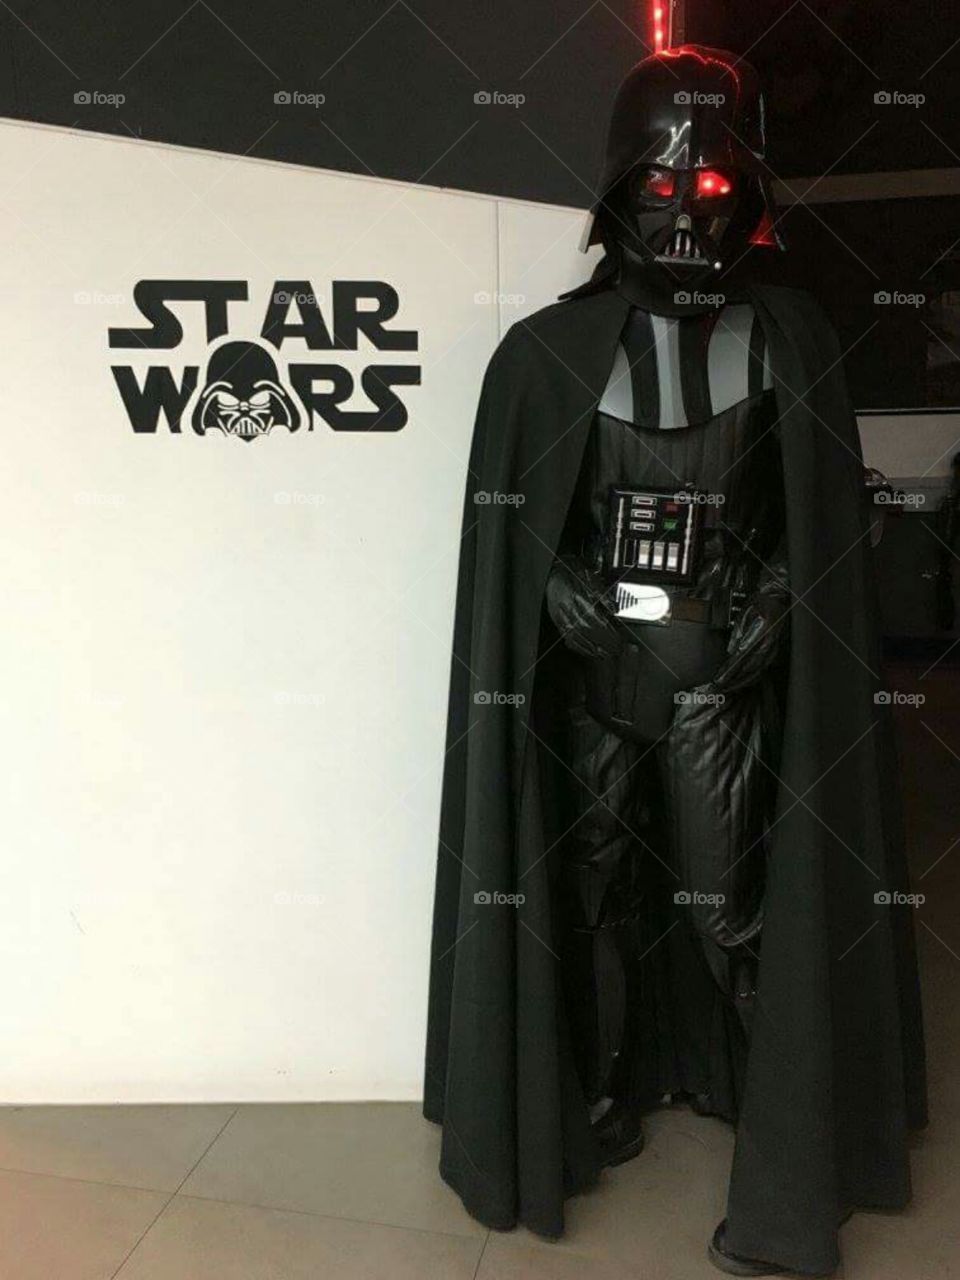 Dark Vader star wars